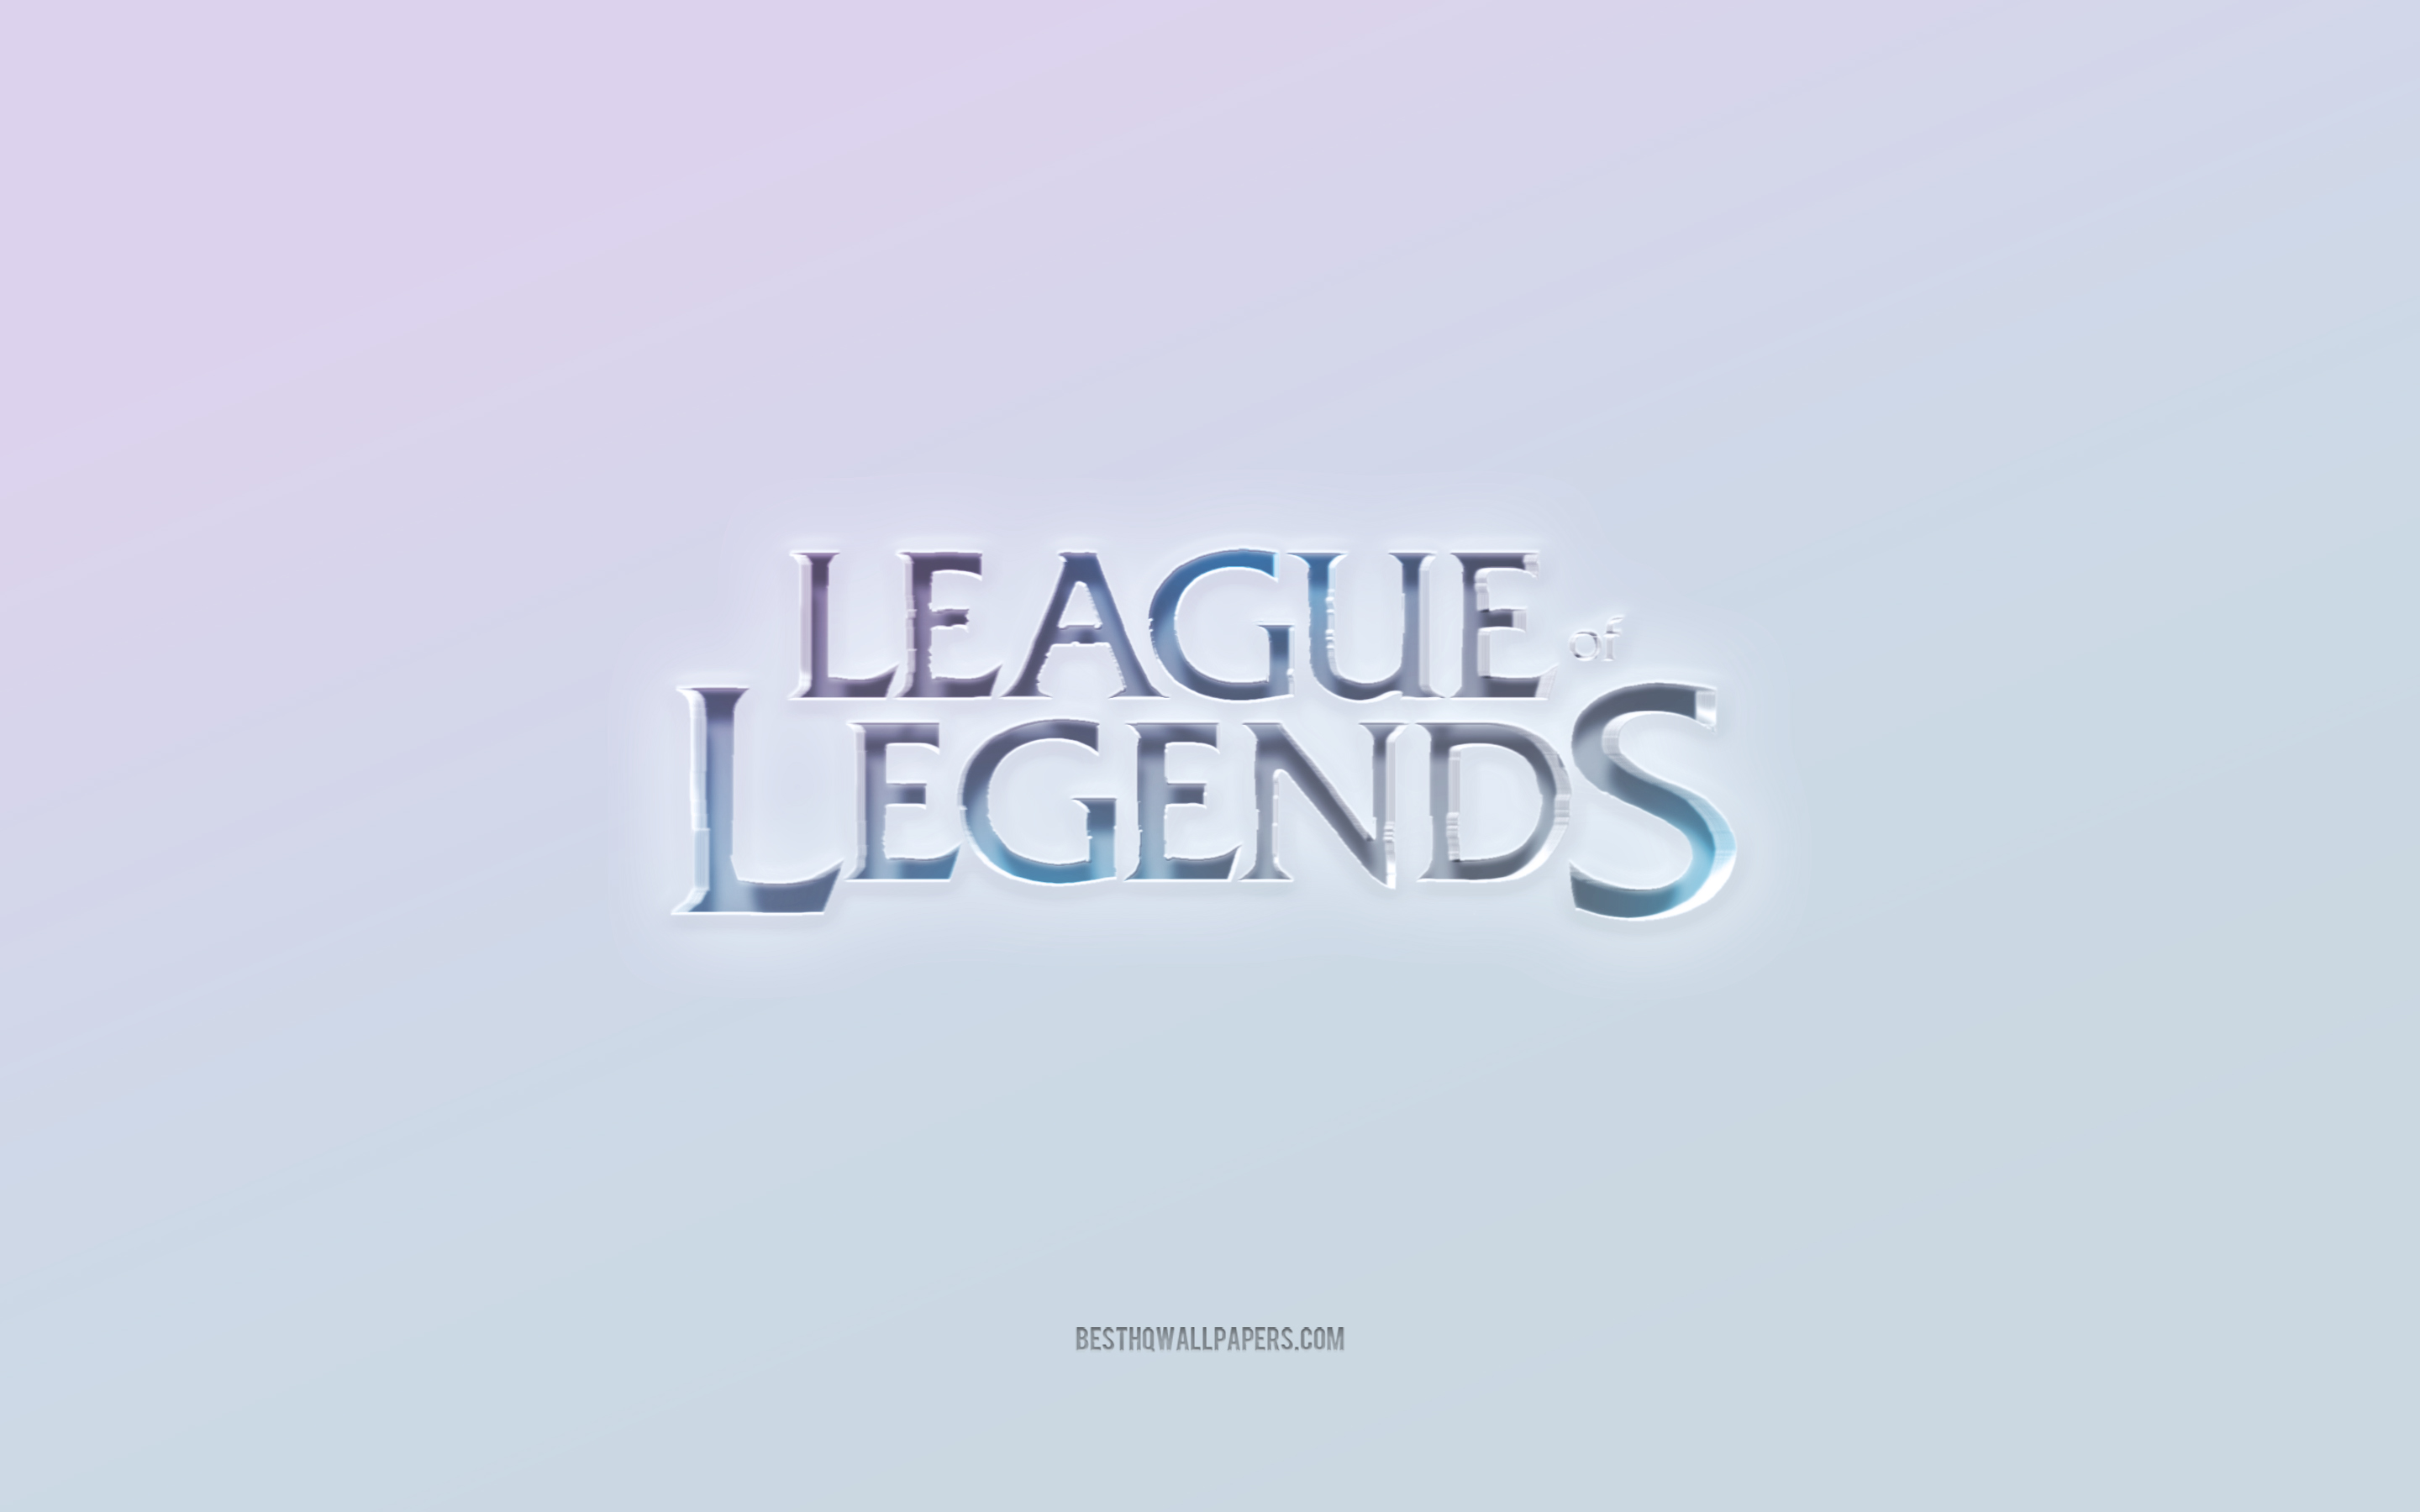 Logo League of Legends, texte 3d découpé, fond blanc, logo League of Legends 3d, emblème Instagram, League of Legends, logo en relief, emblème League of Legends 3d